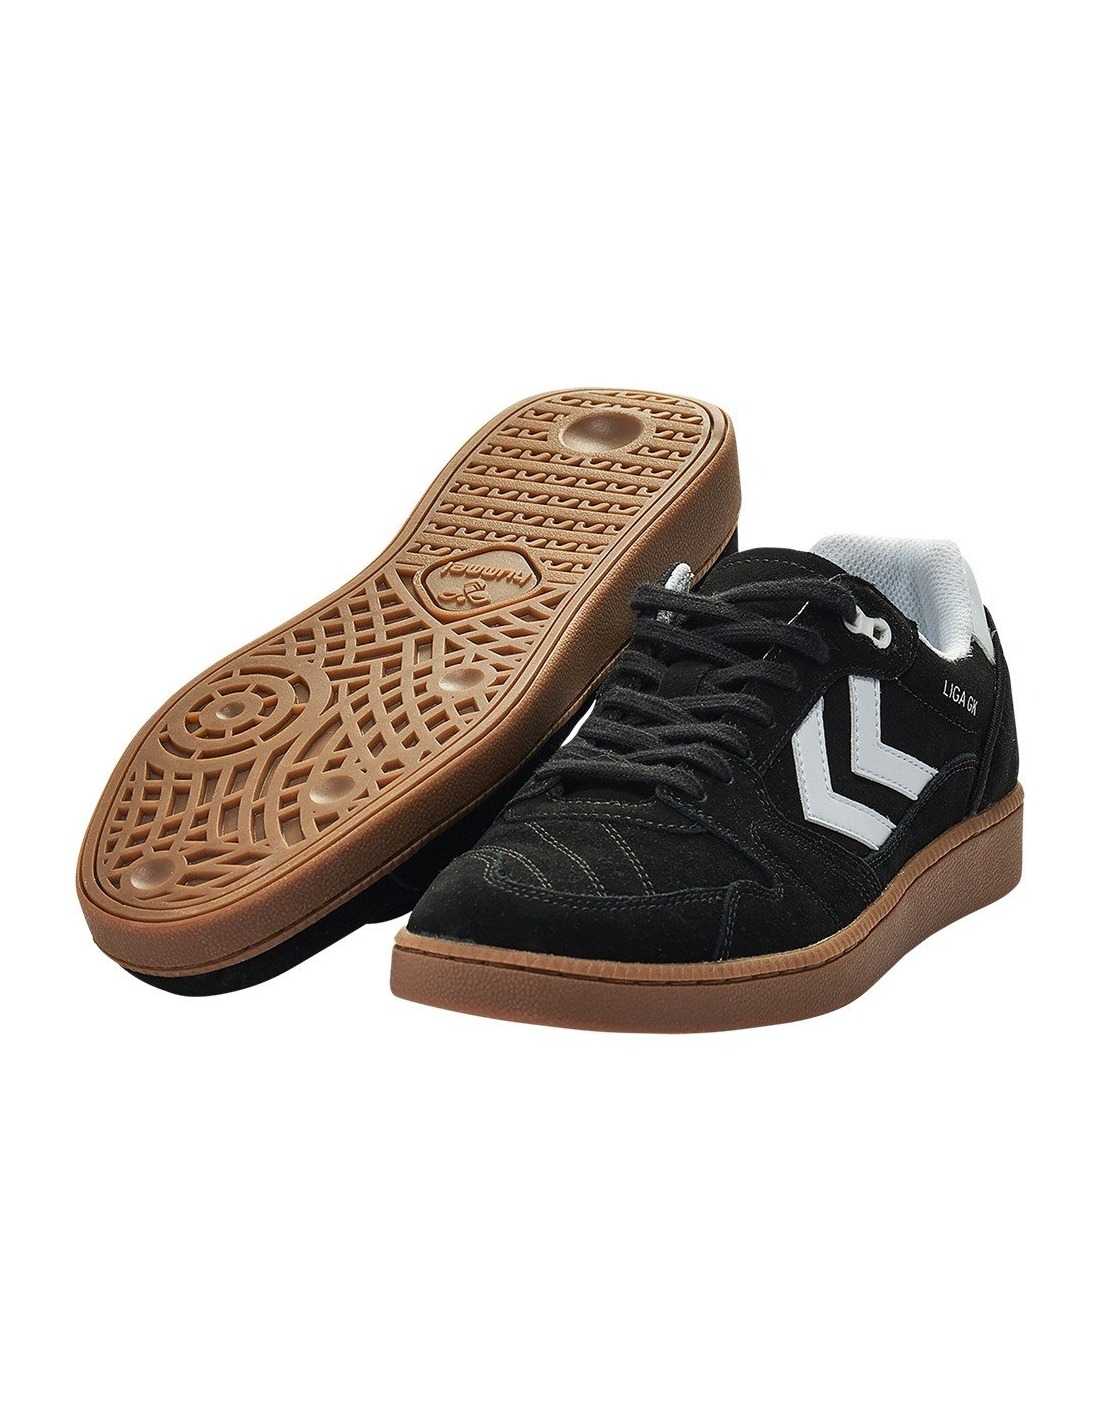 coser Inseguro Comparable Zapatillas Hummel Liga Goalkeeper| SPS Sport - Tu Tienda de Deportes Indoor